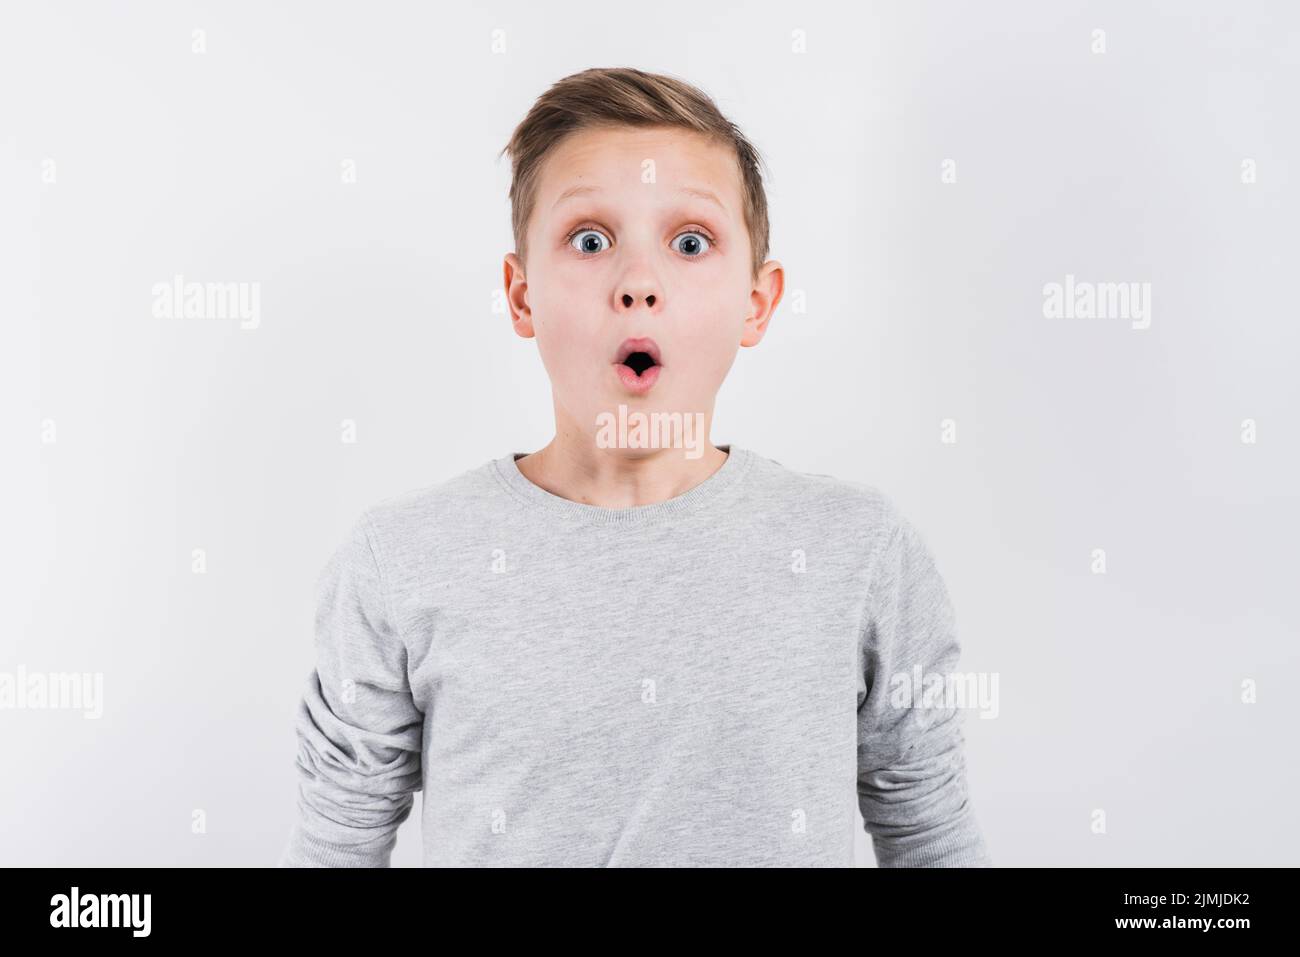 shocked boy